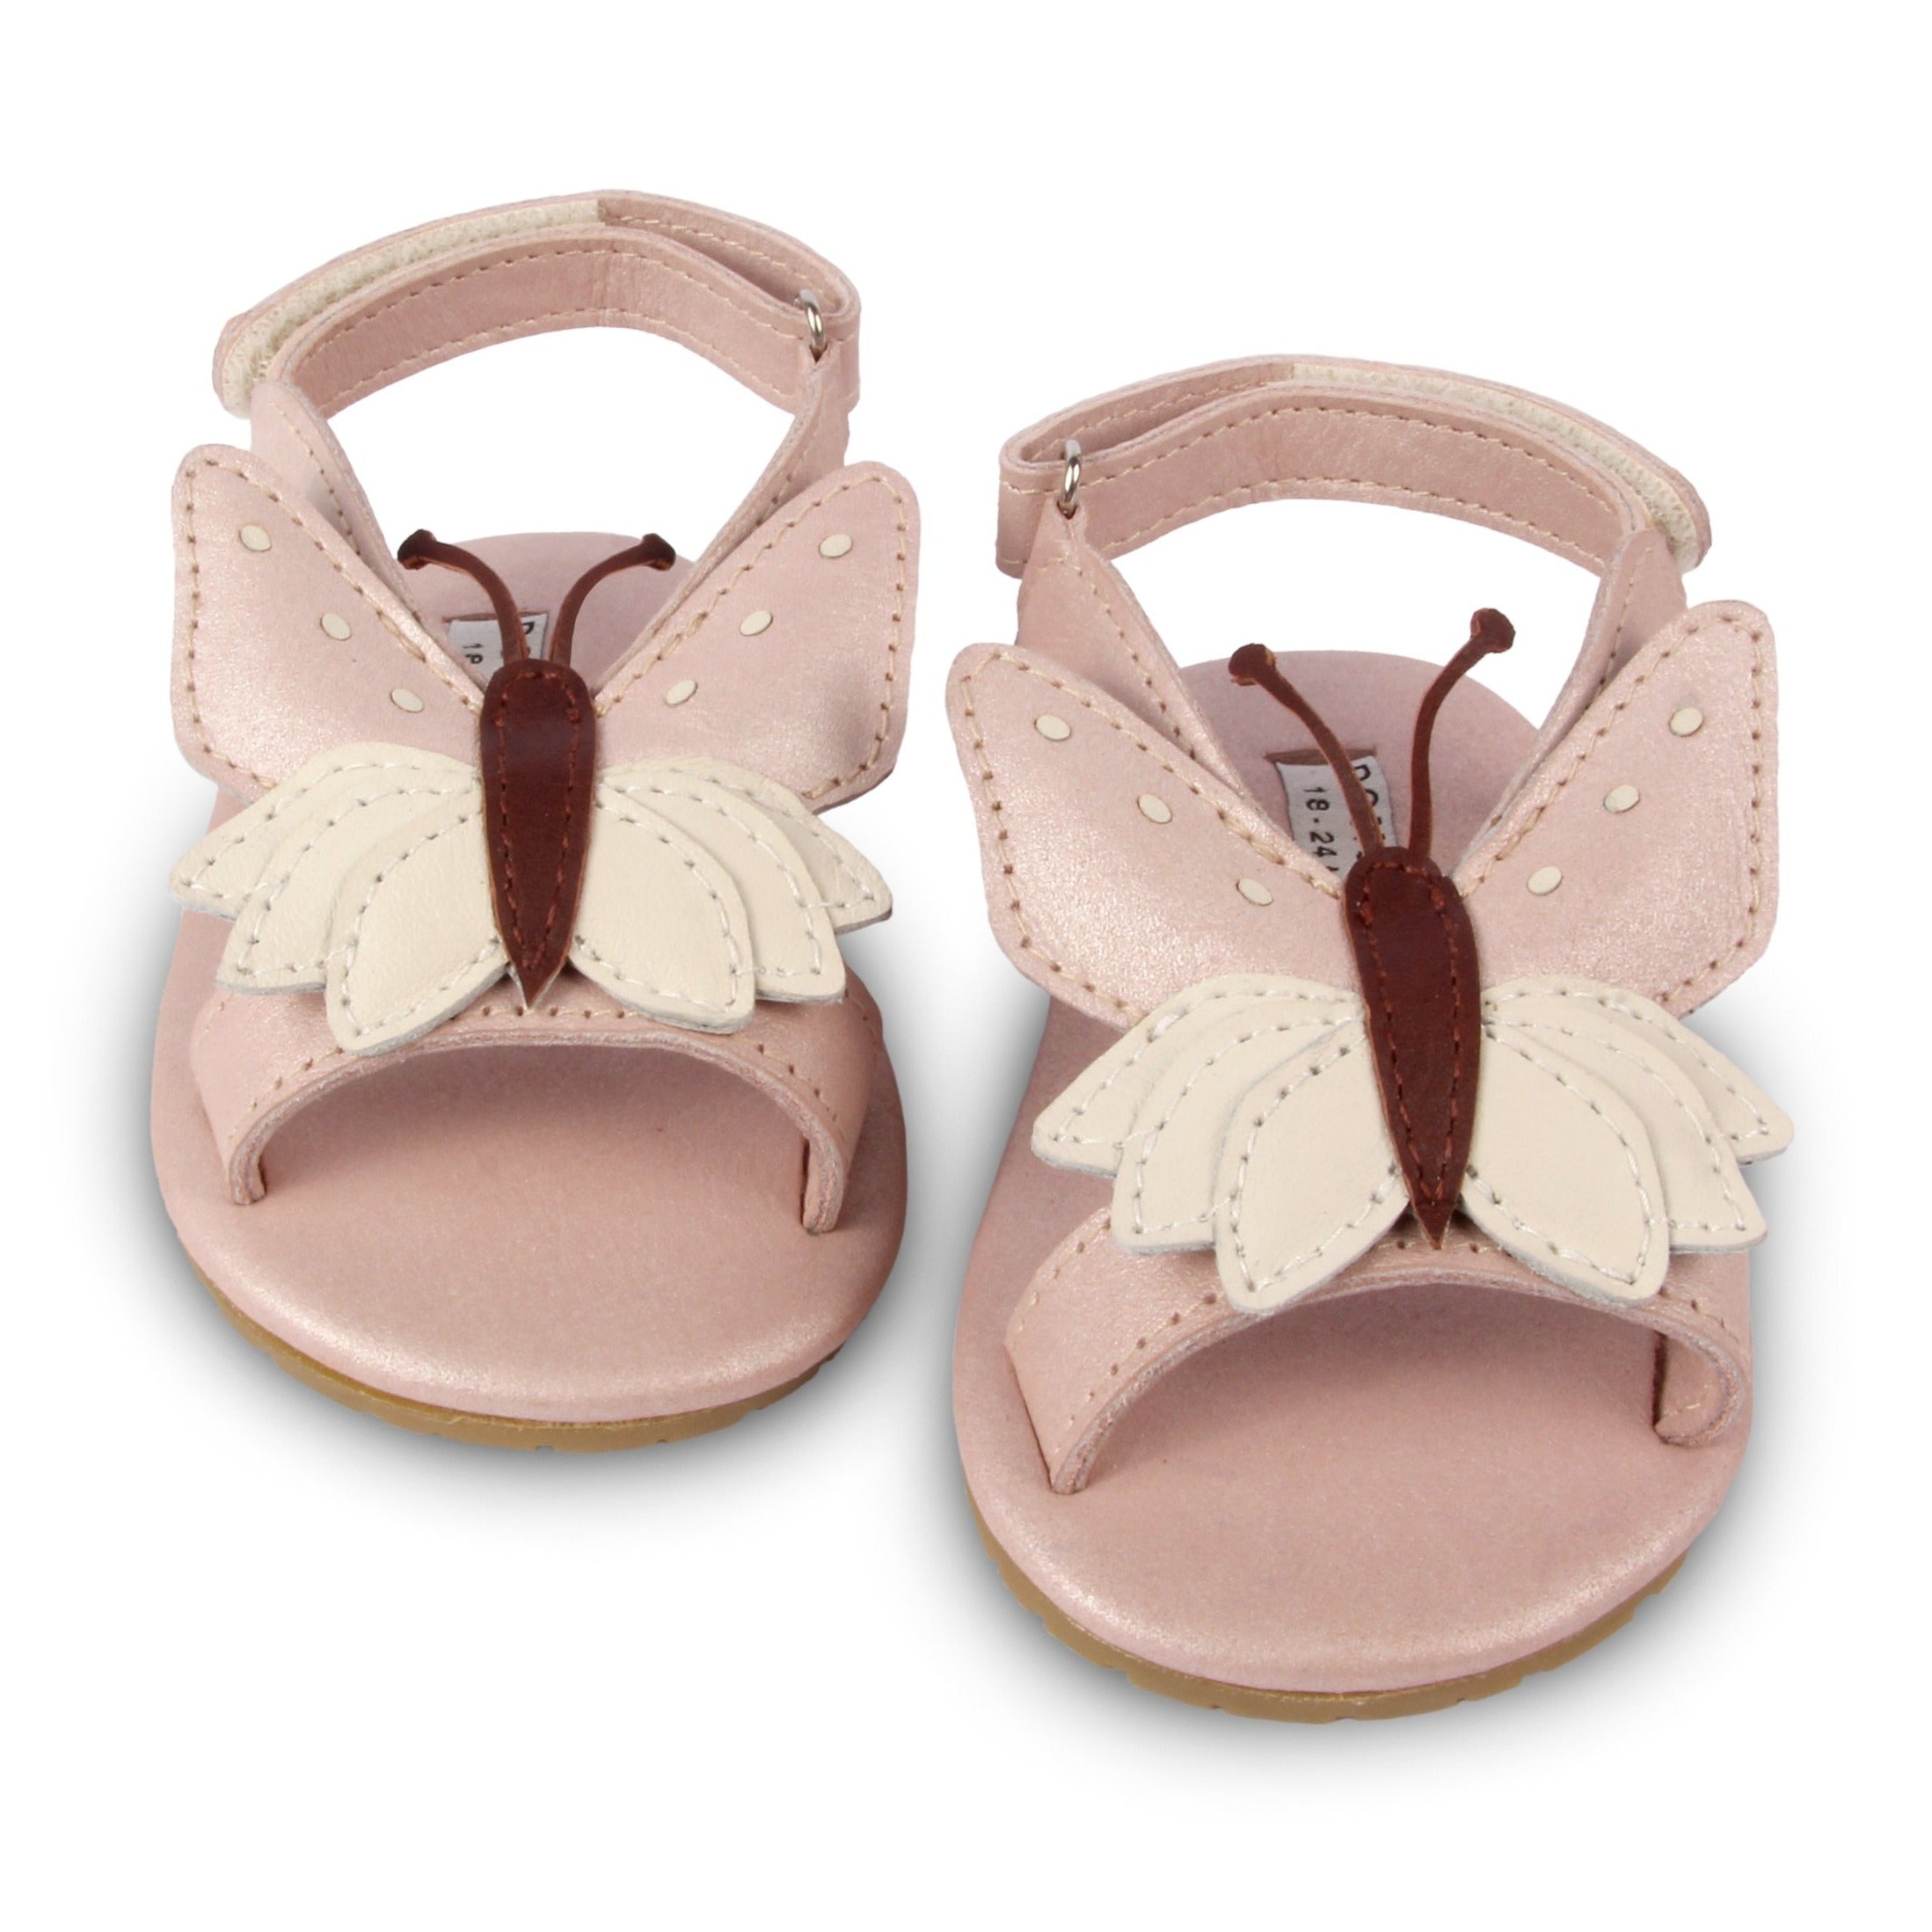 Donsje Butterfly shoes - Best Baby Girl Gifts